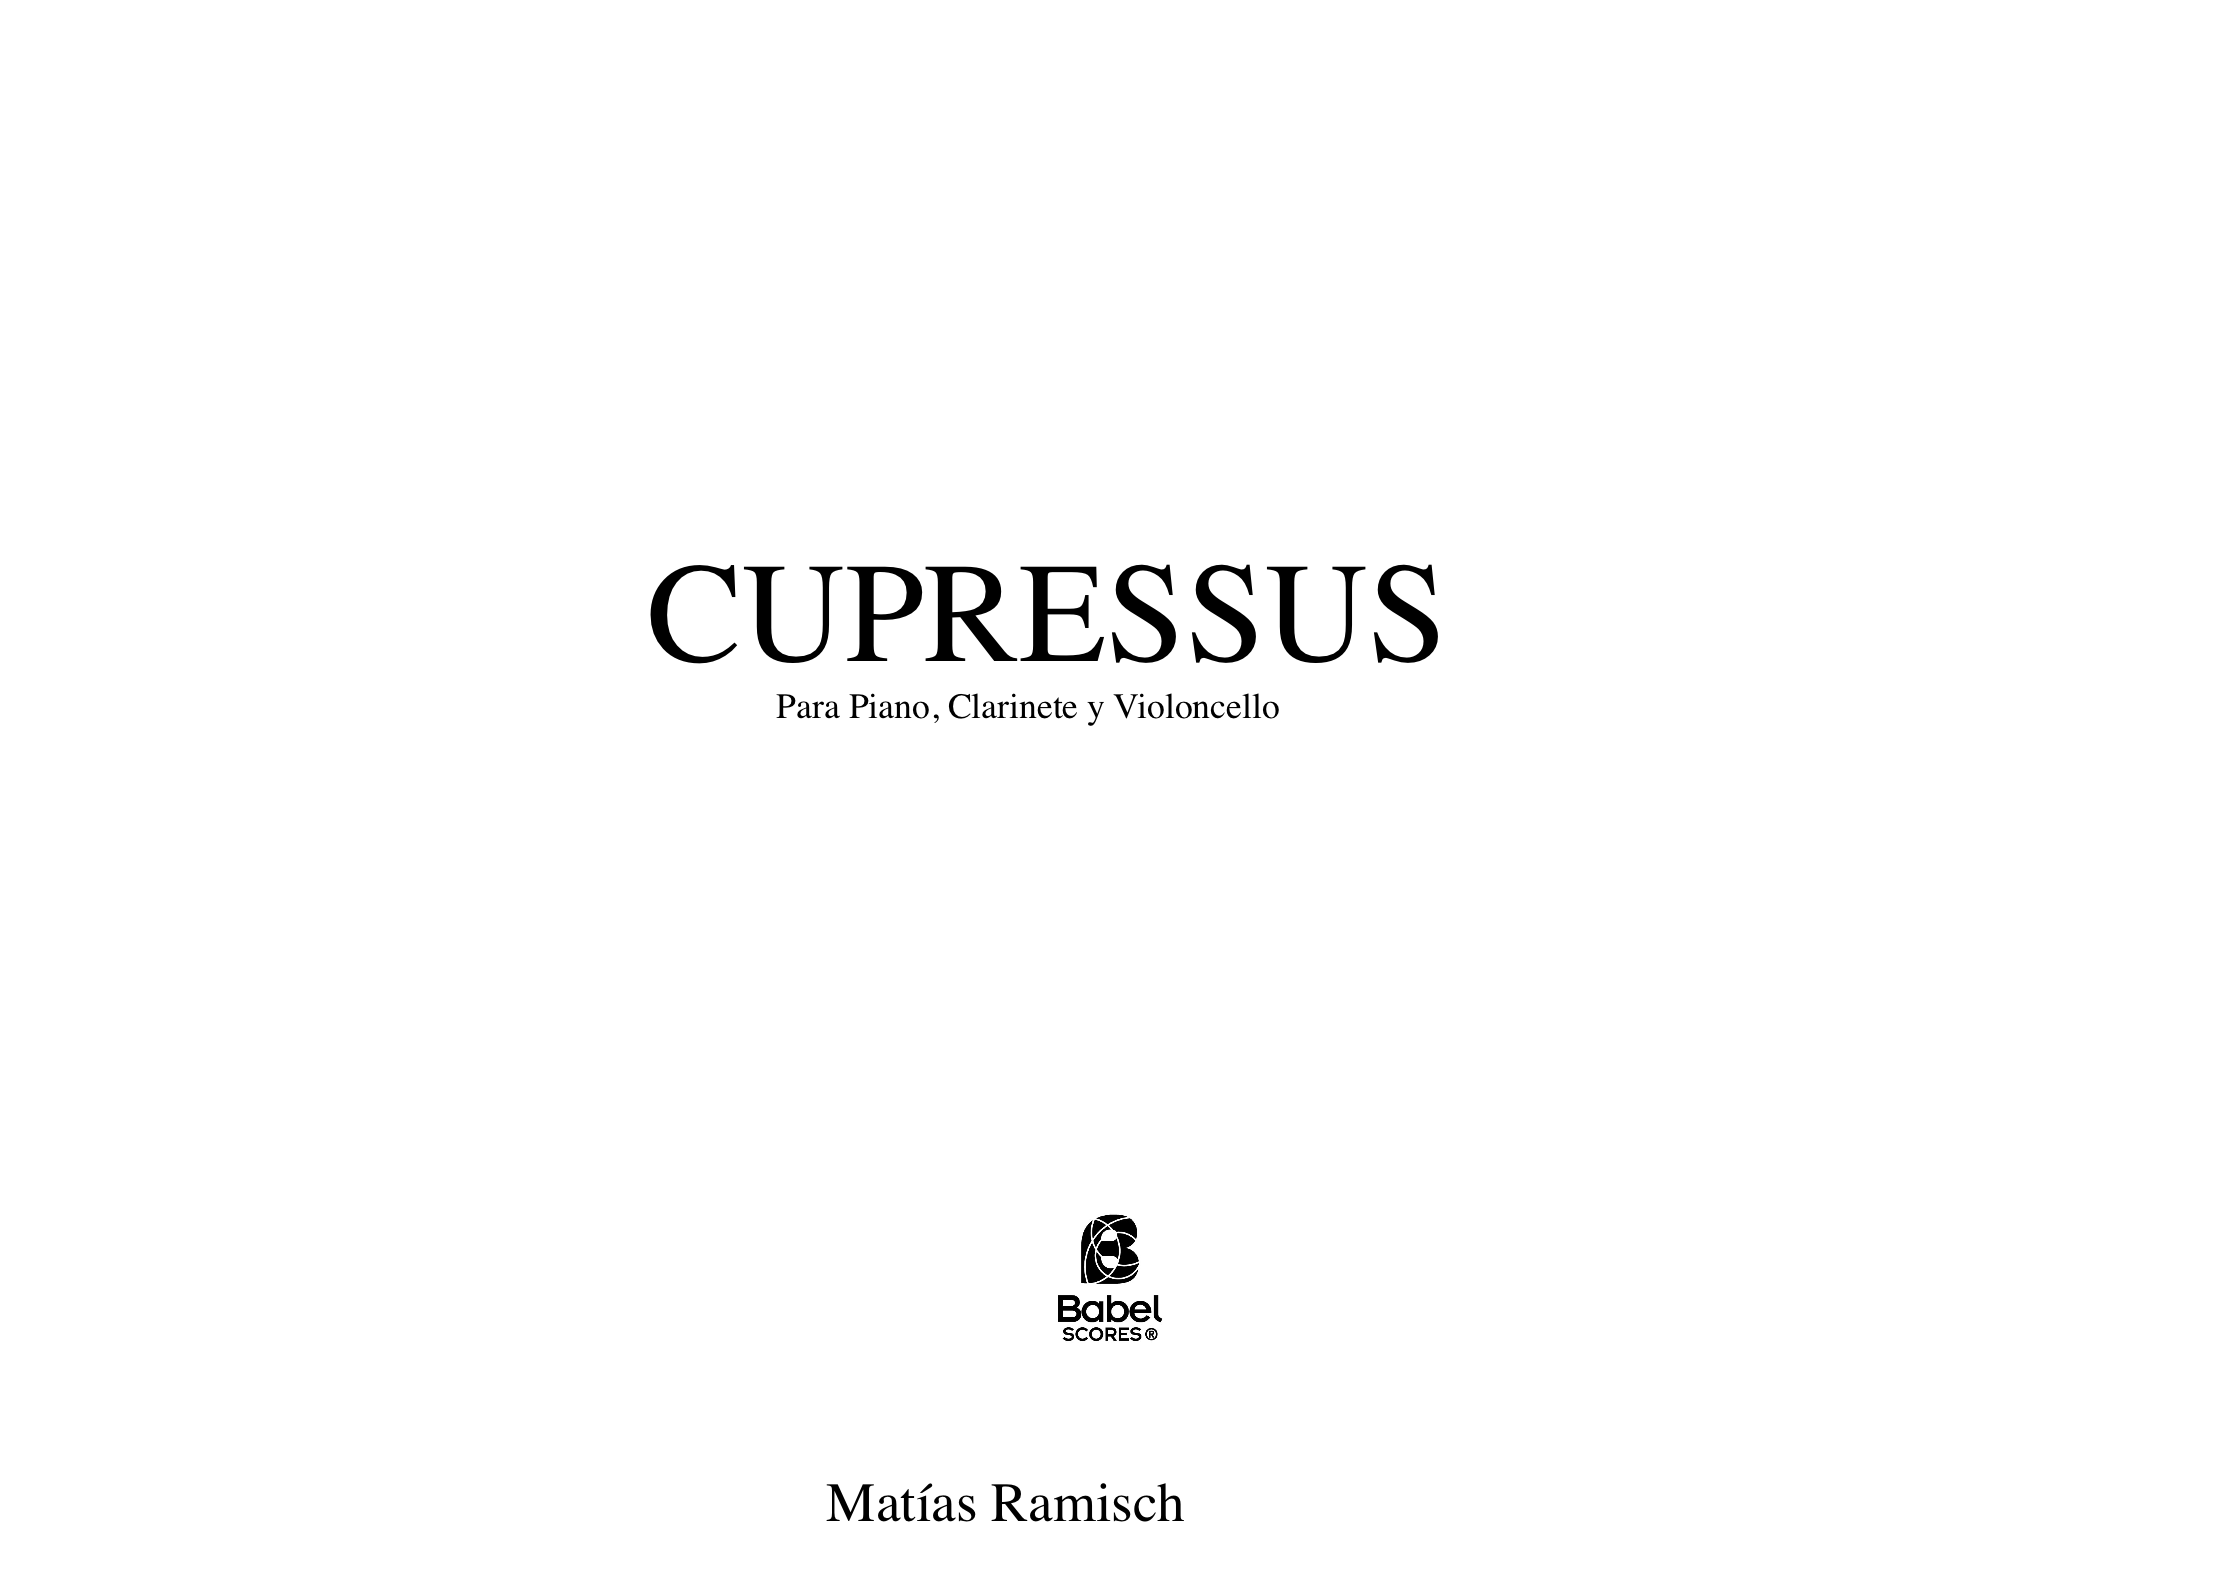 Cupressus A4 z 3 1 375